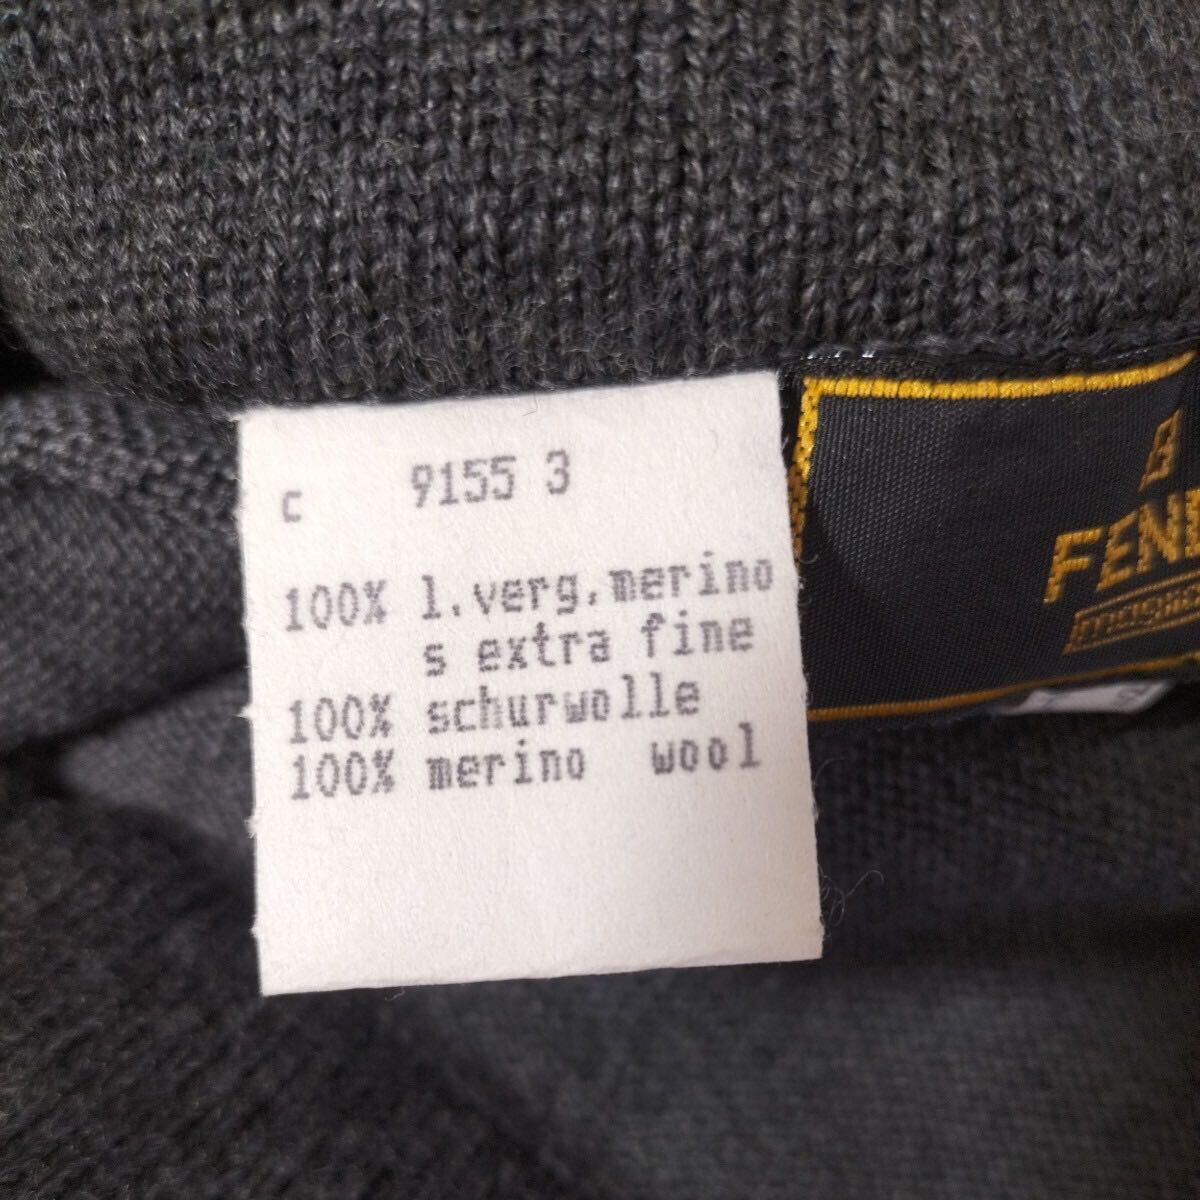 4-368 FENDI フェンディ レディース アパレル 服 衣類 スカート ニットスカート グレー イタリア製_画像4